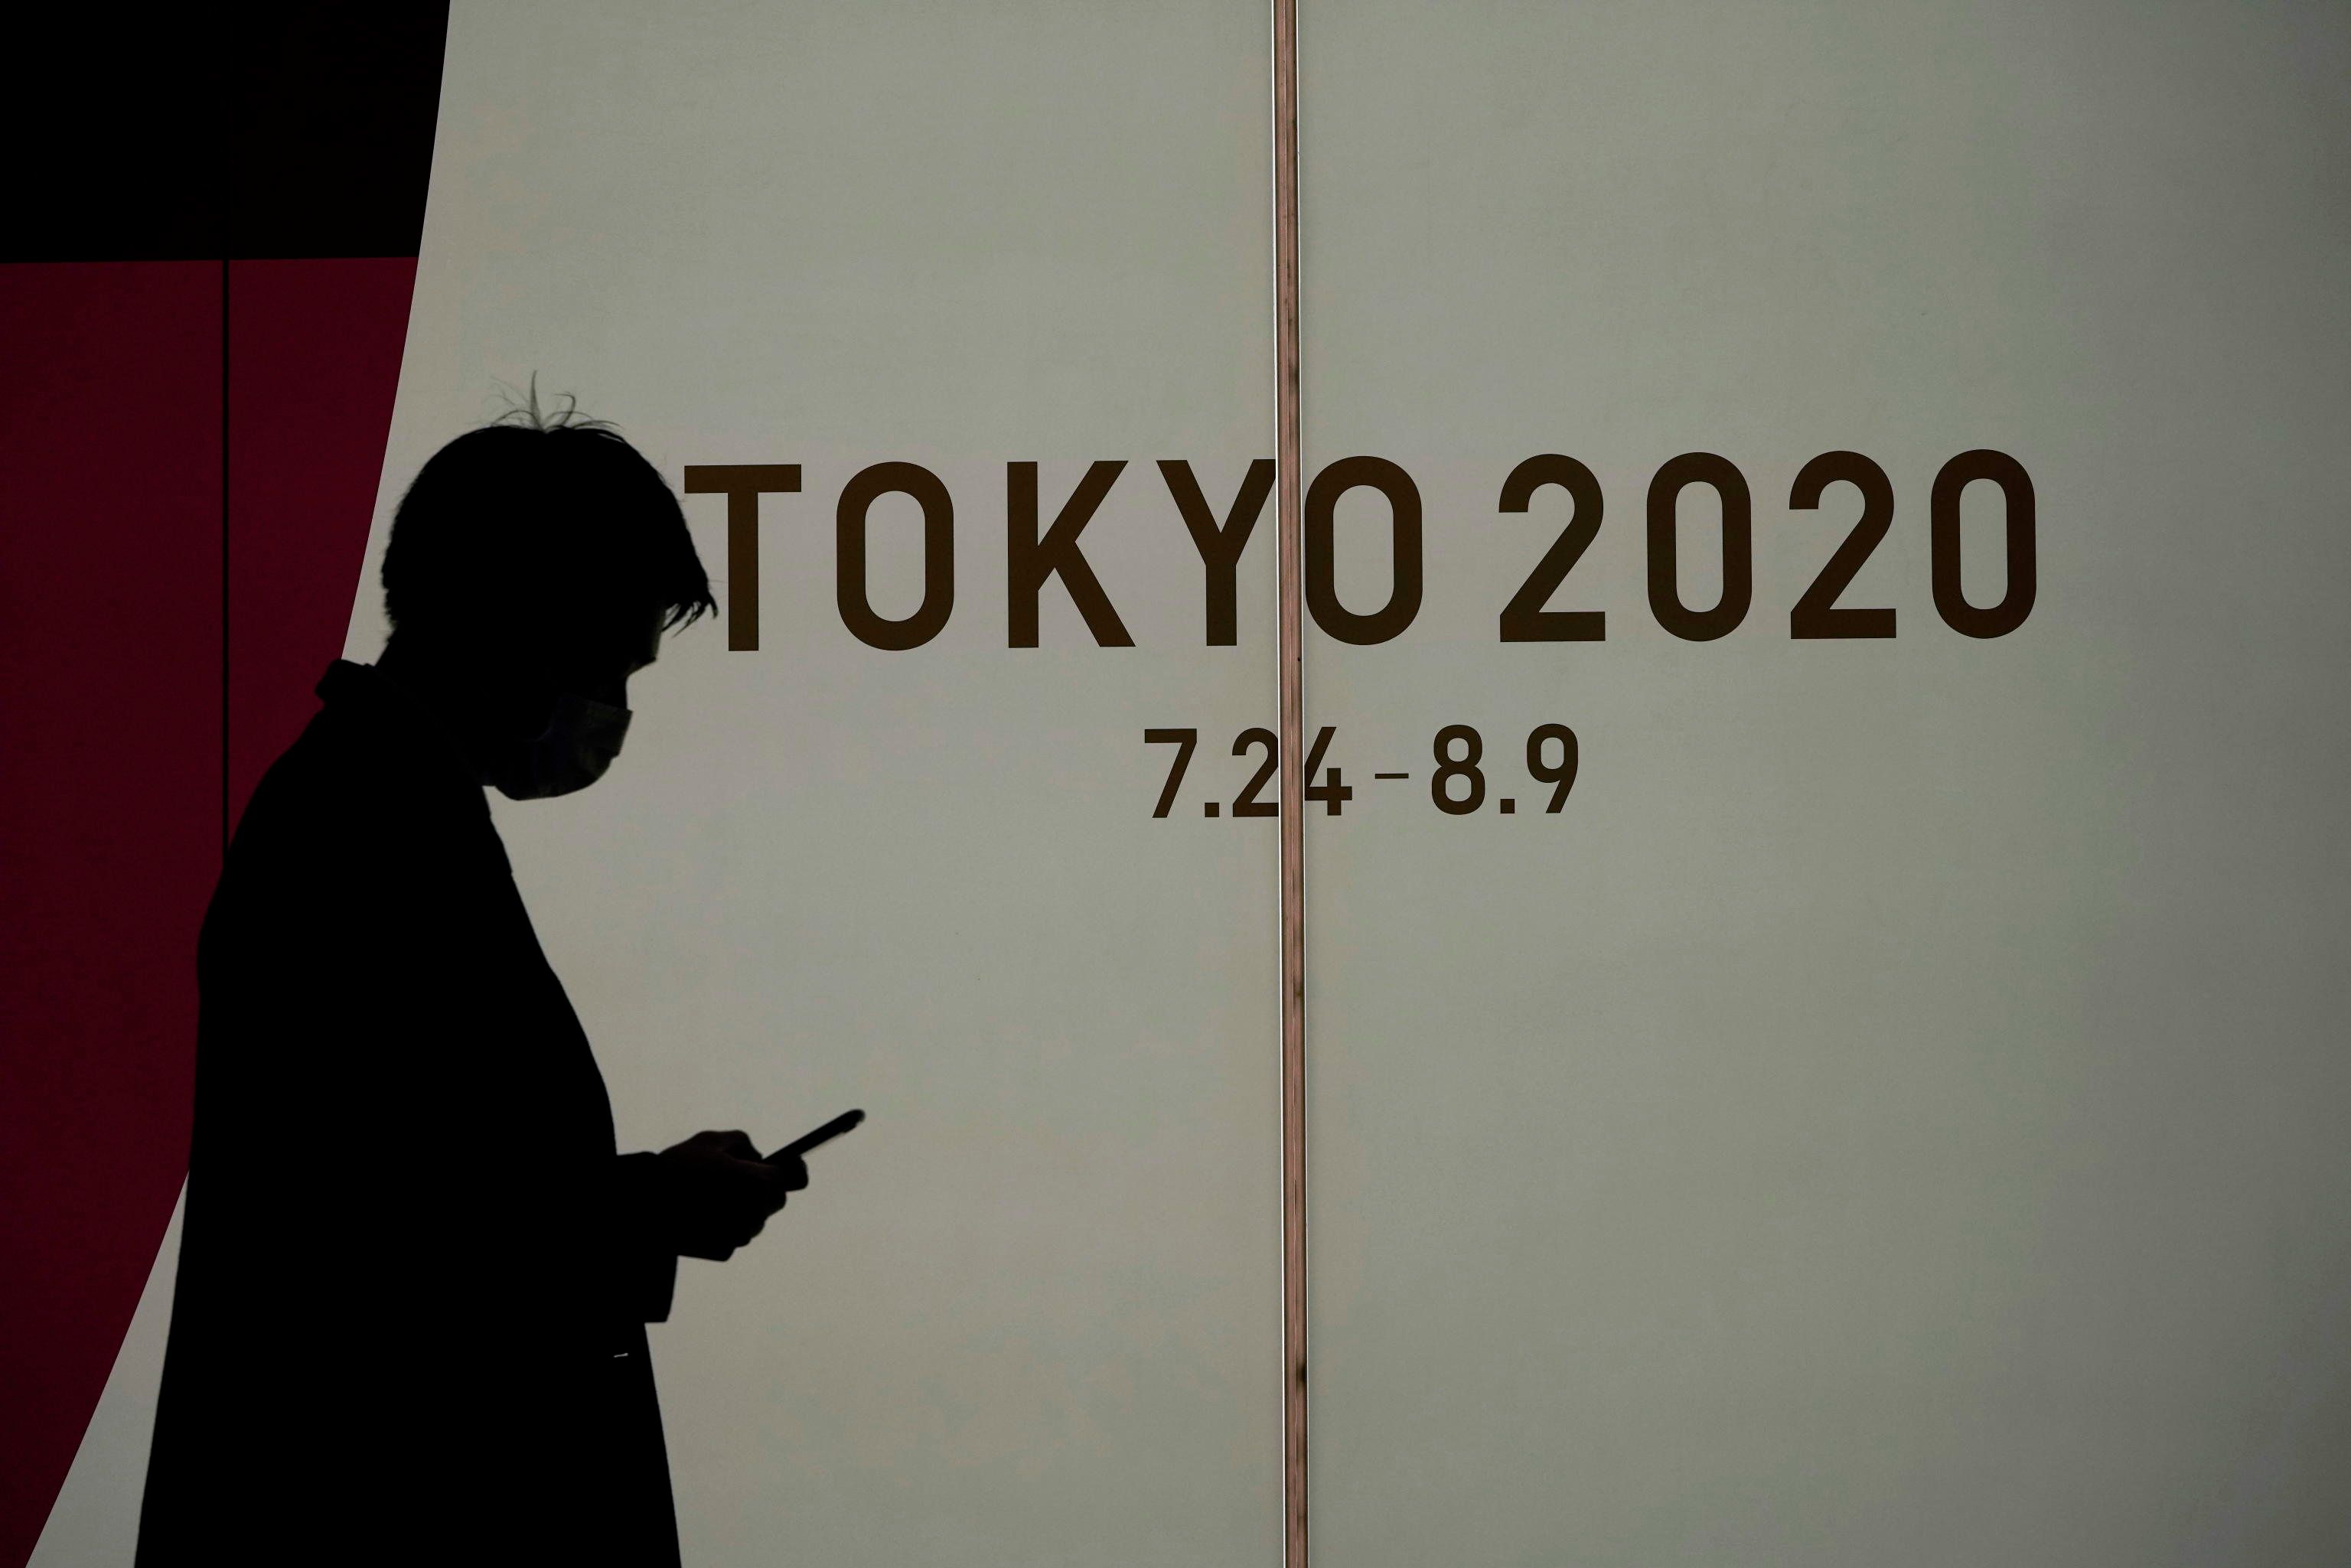 olimpiadi tokyo 2020 cancellate rinviate quanto costa